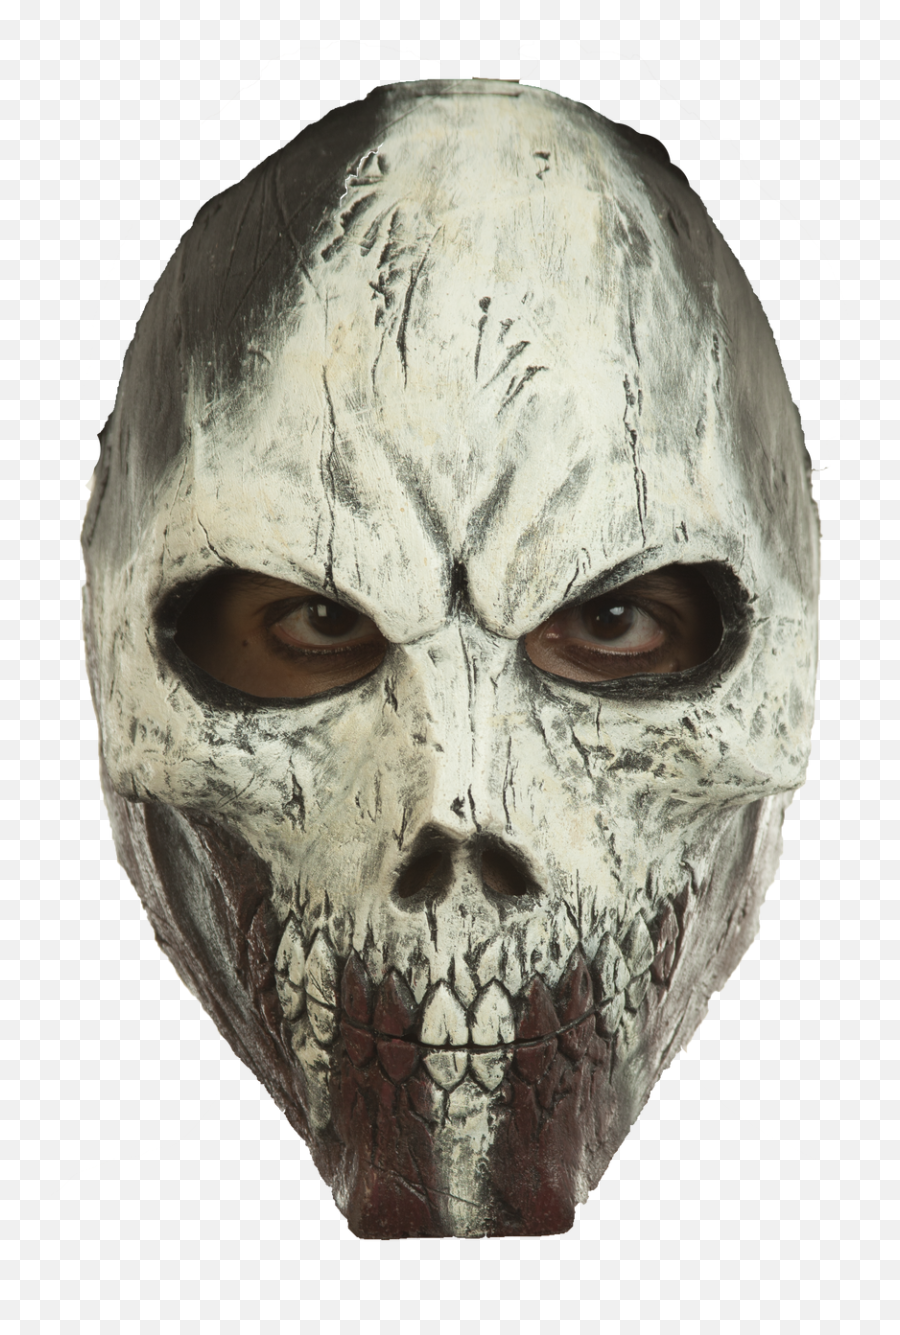 Freaky Findz - Mask Png,Skull Mask Png